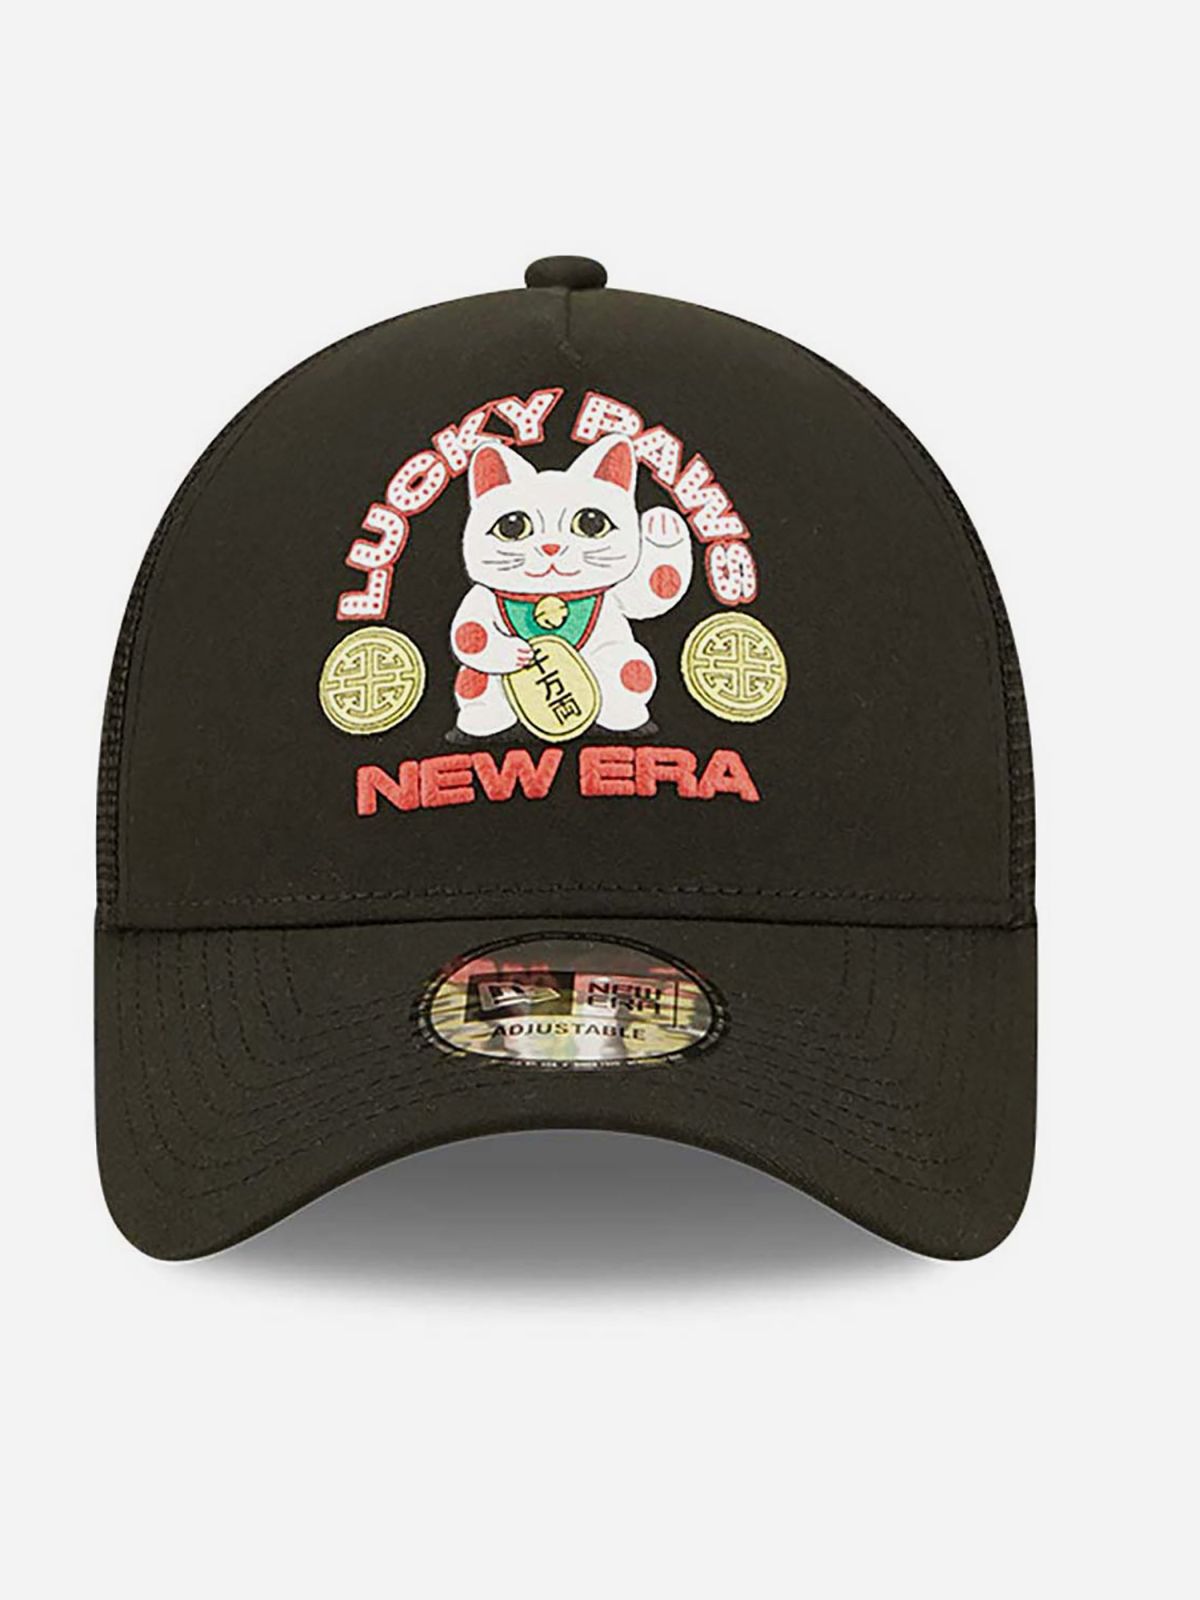  כובע מצחייה עם רקמת לוגו והדפס / גברים של NEW ERA